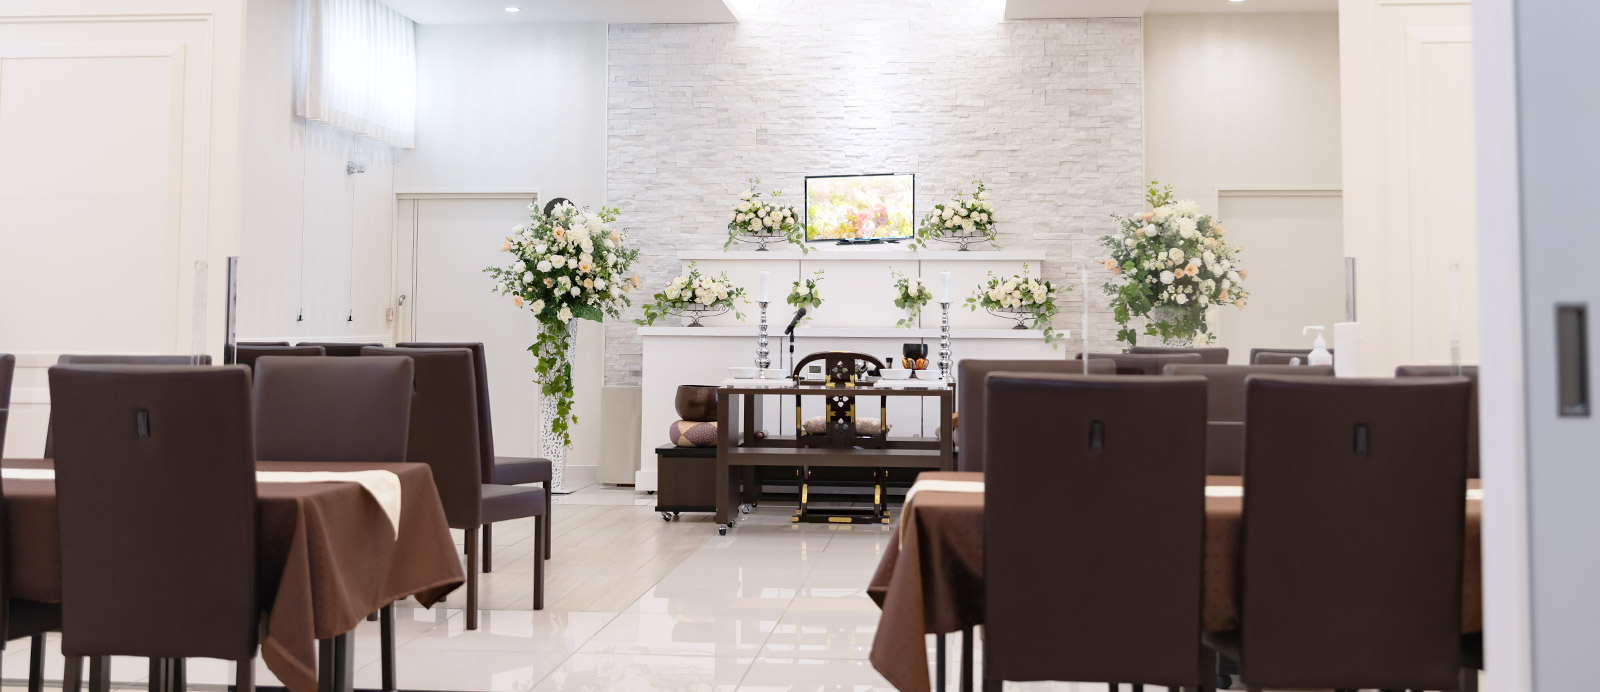 清住ホールで葬儀・葬式が9.5万円からできる家族葬の仙和のホールの内装イメージ